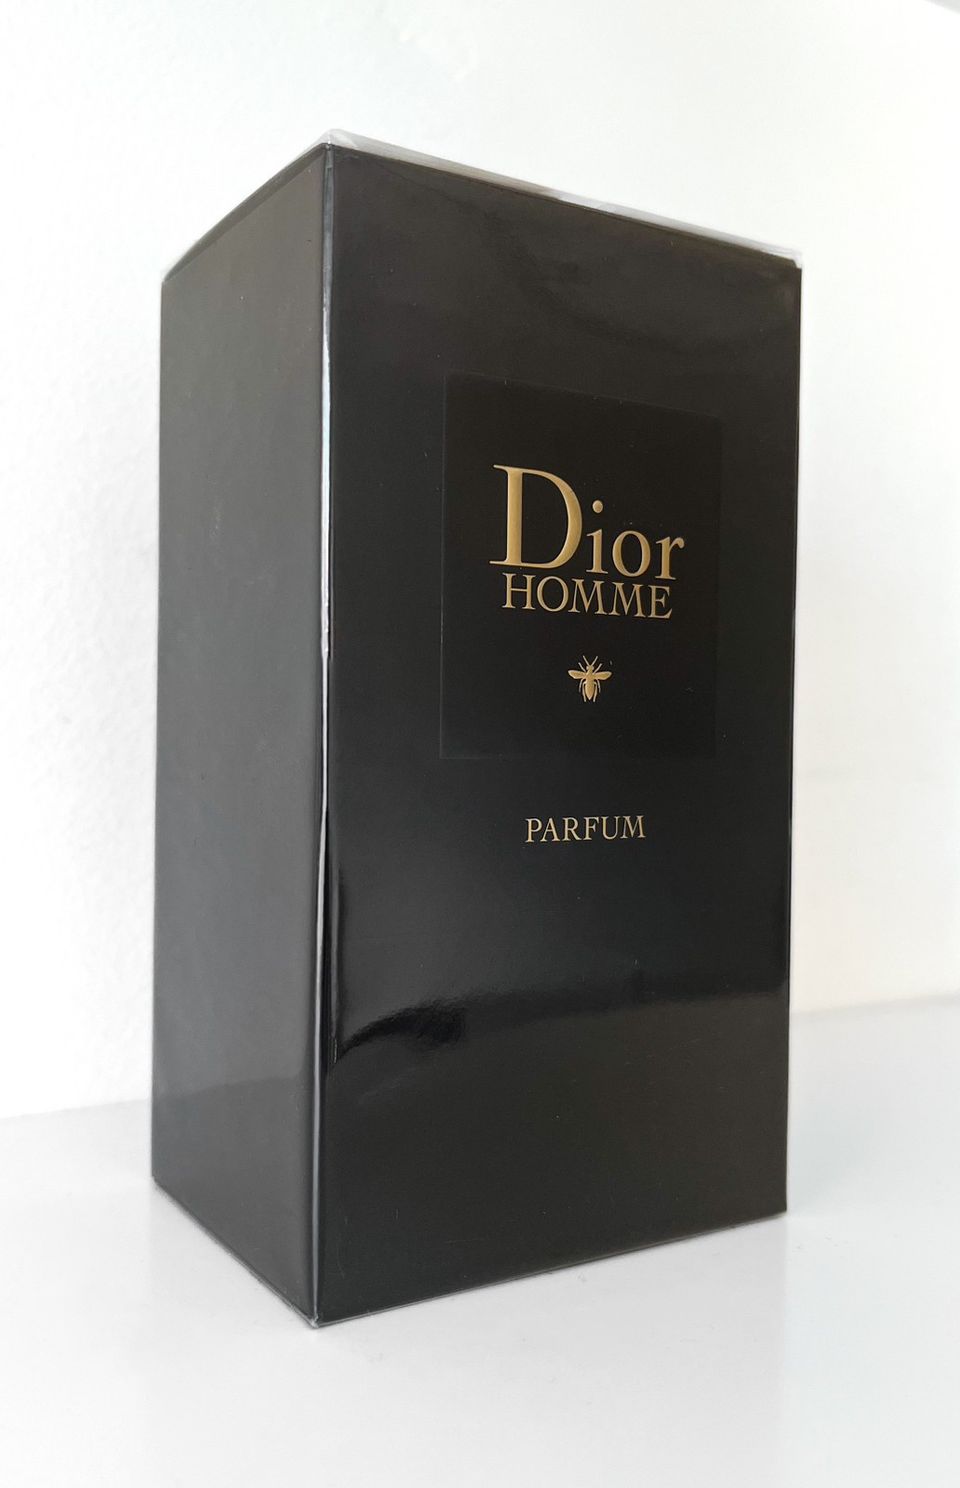 Dior Homme Parfum Hajuvesi 100ml, UUSI